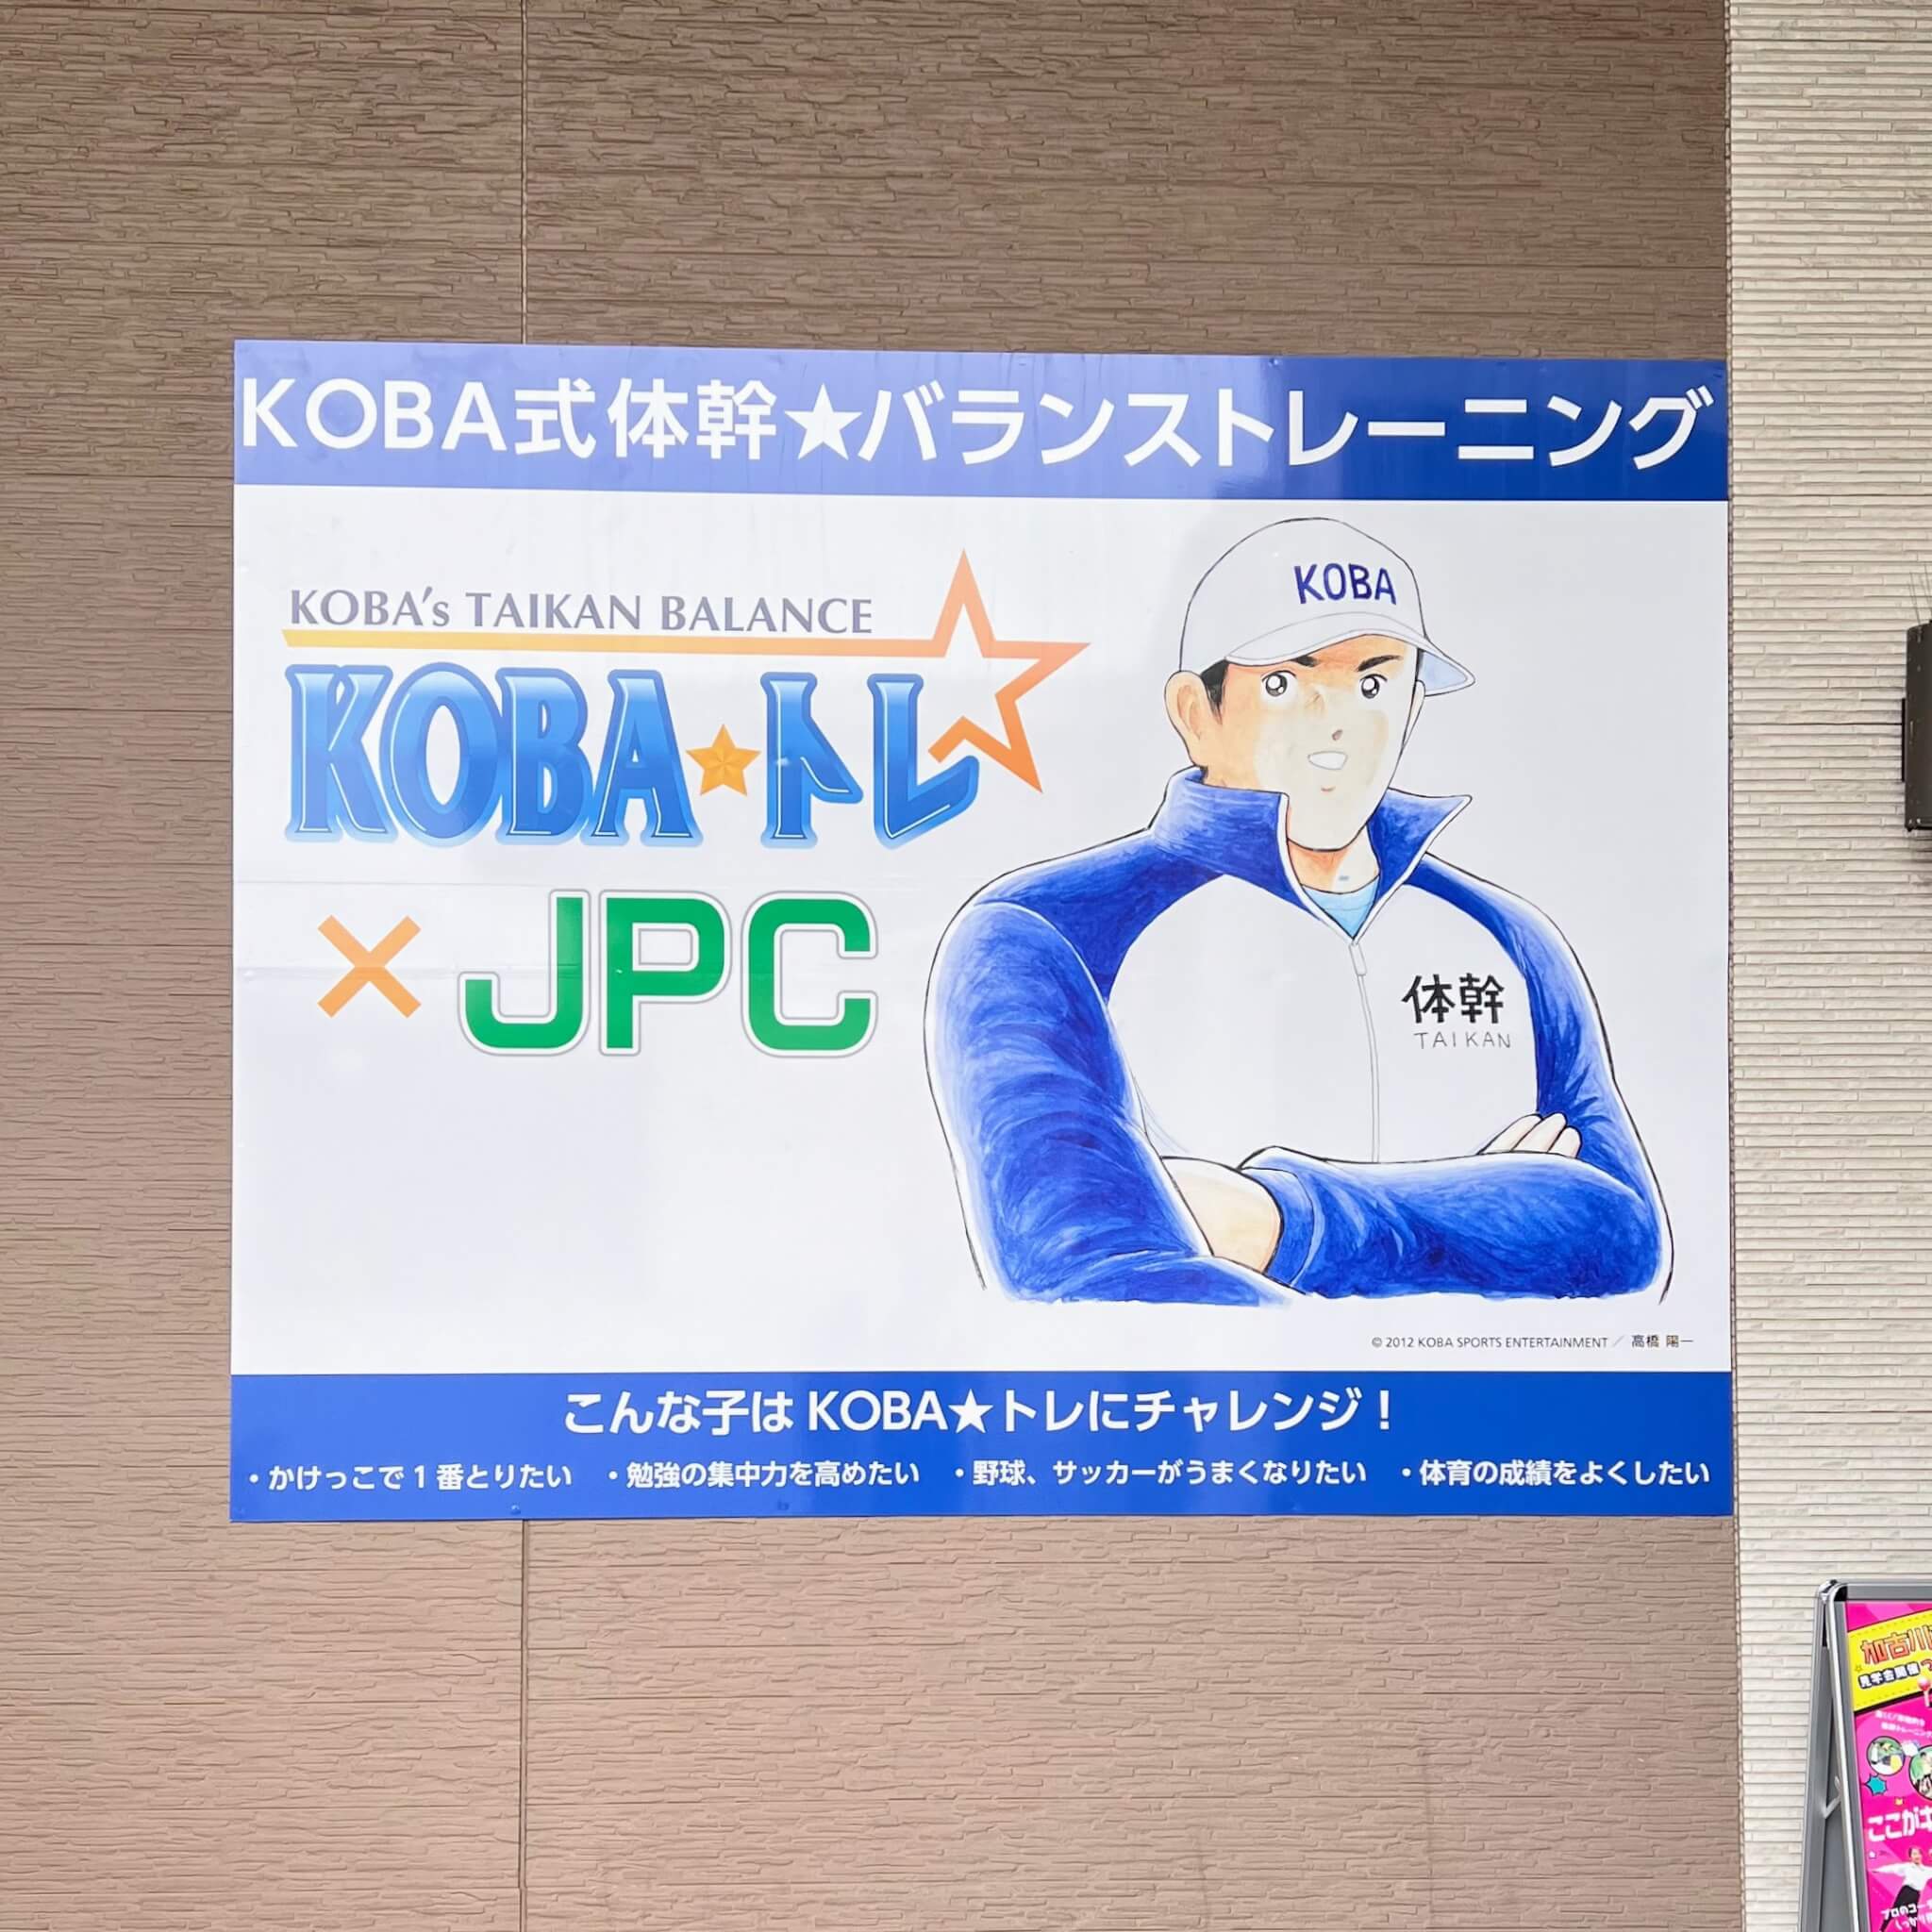 JPCスポーツ教室 加古川店のKOBA式体幹☆バランストレーニングの看板